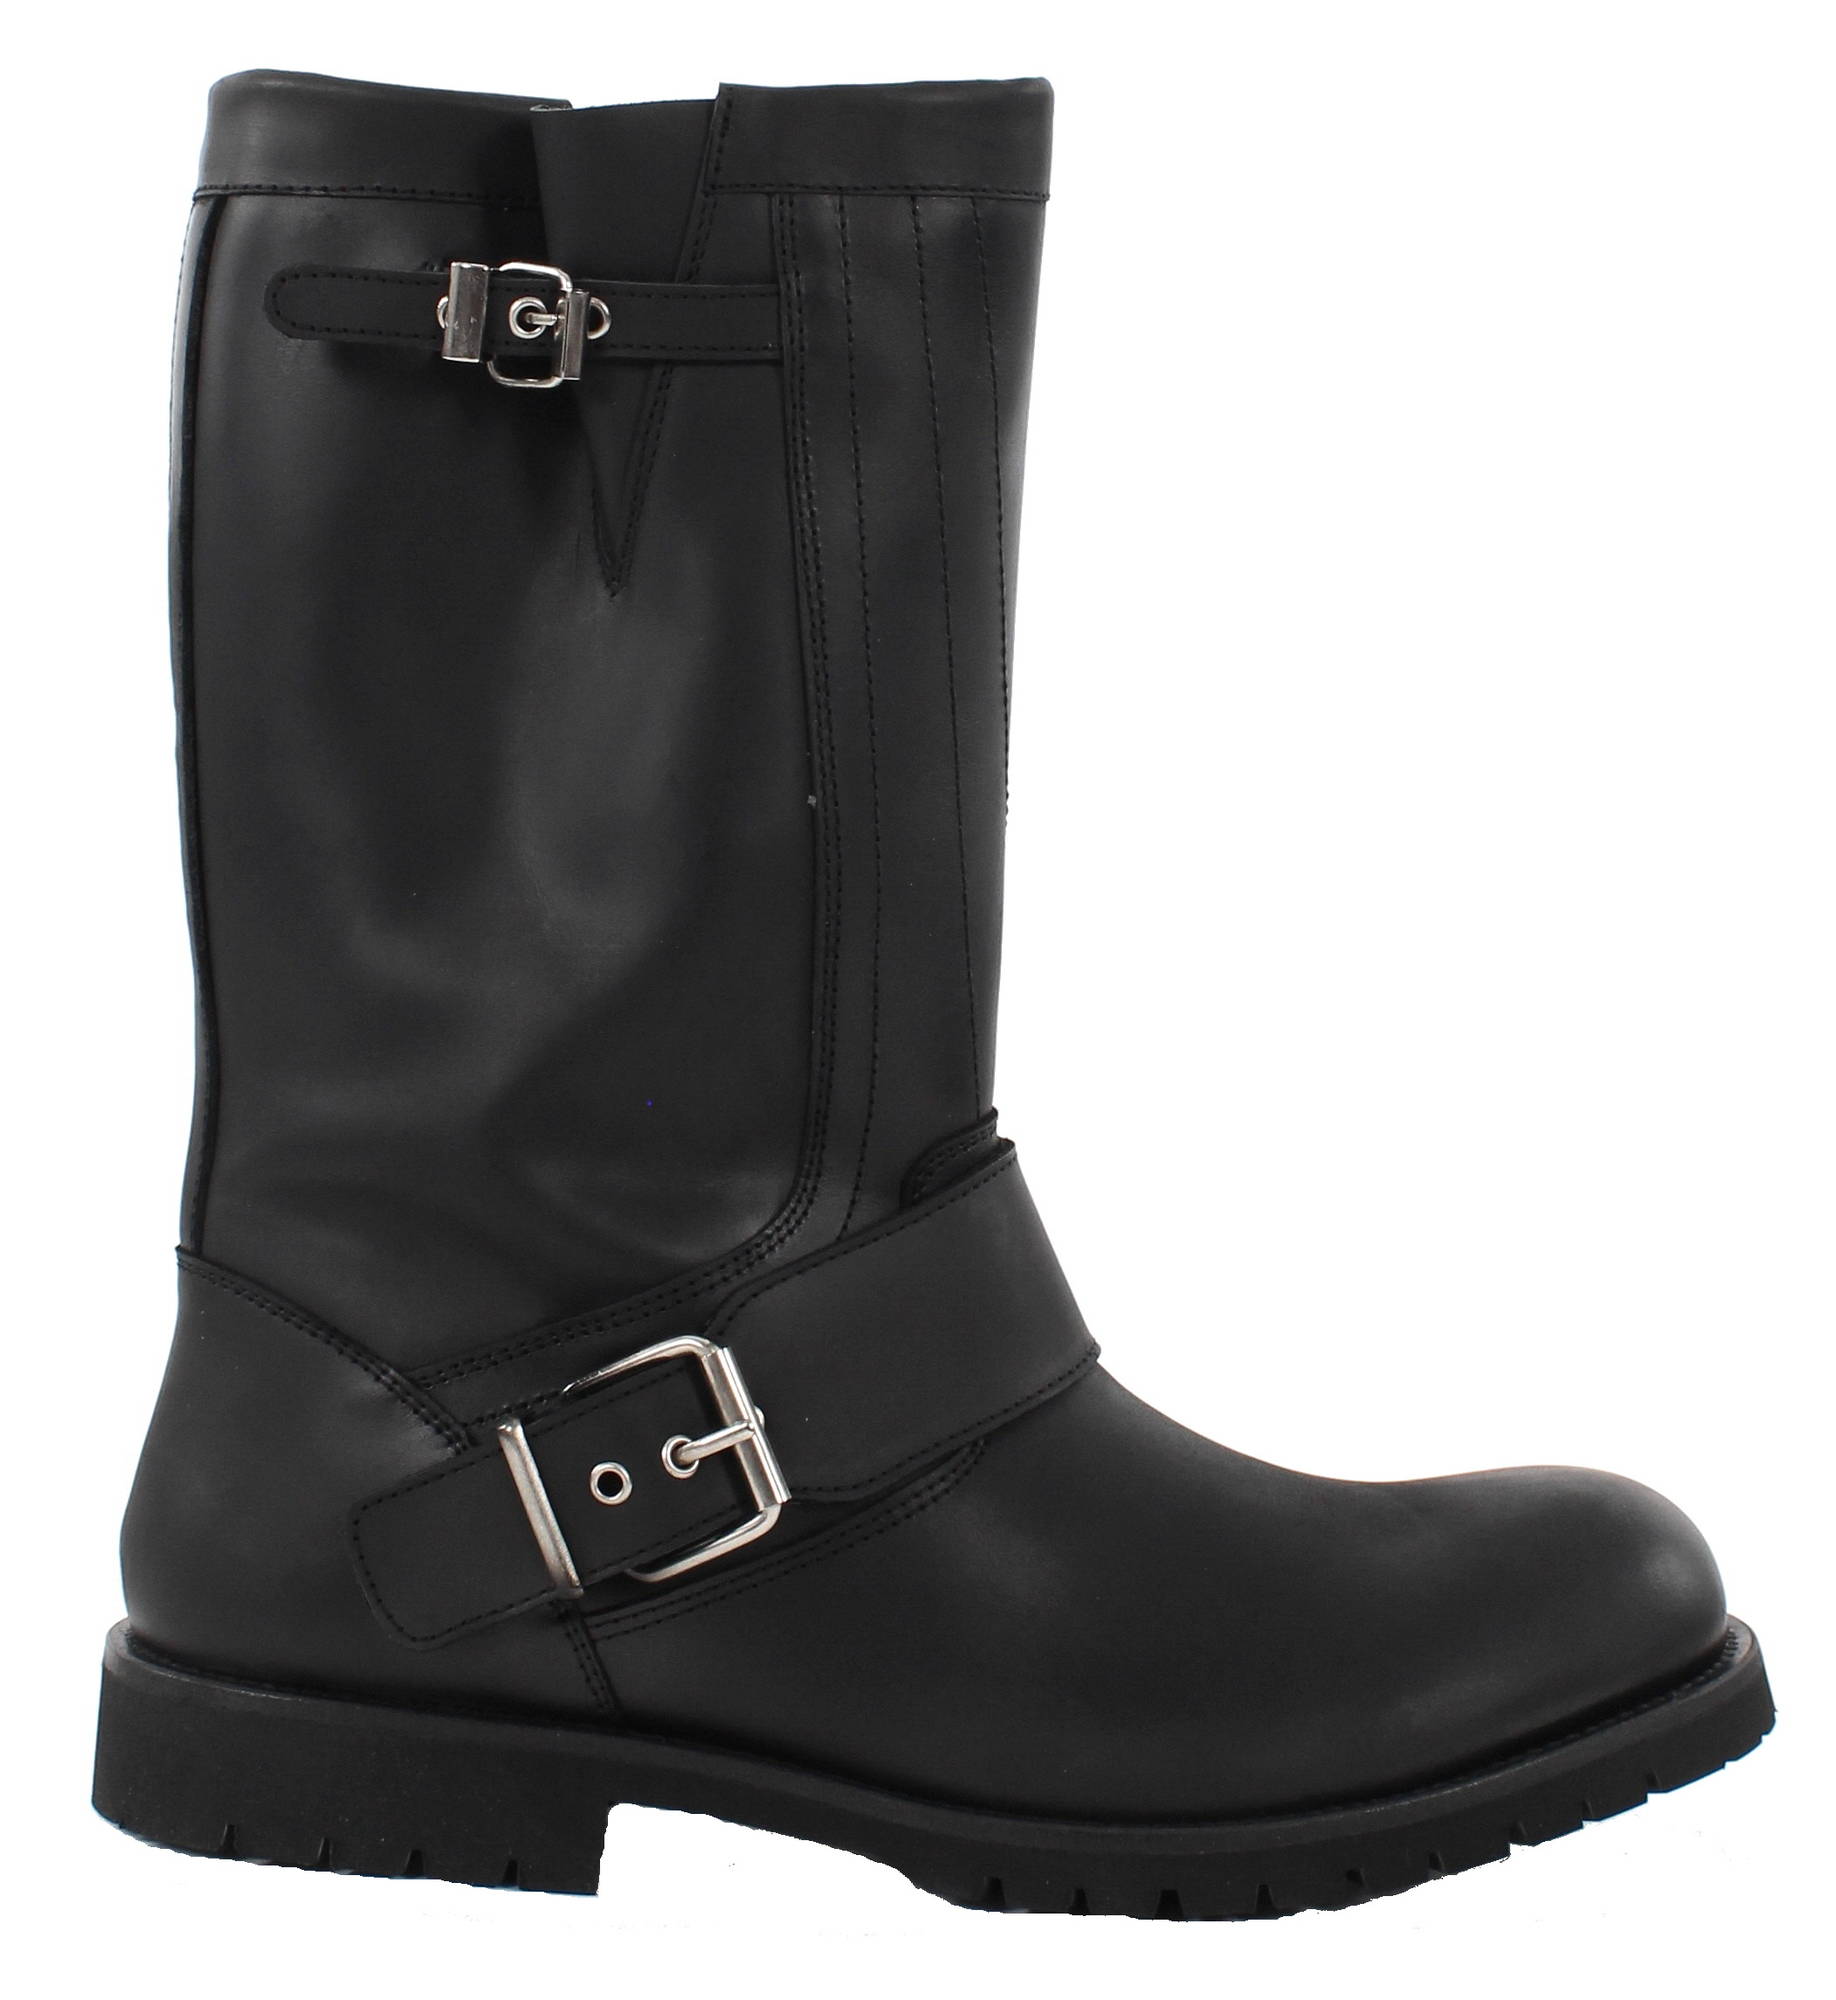 Kentucky's Western boots 1050 black - Stilettoshop.eu webstore